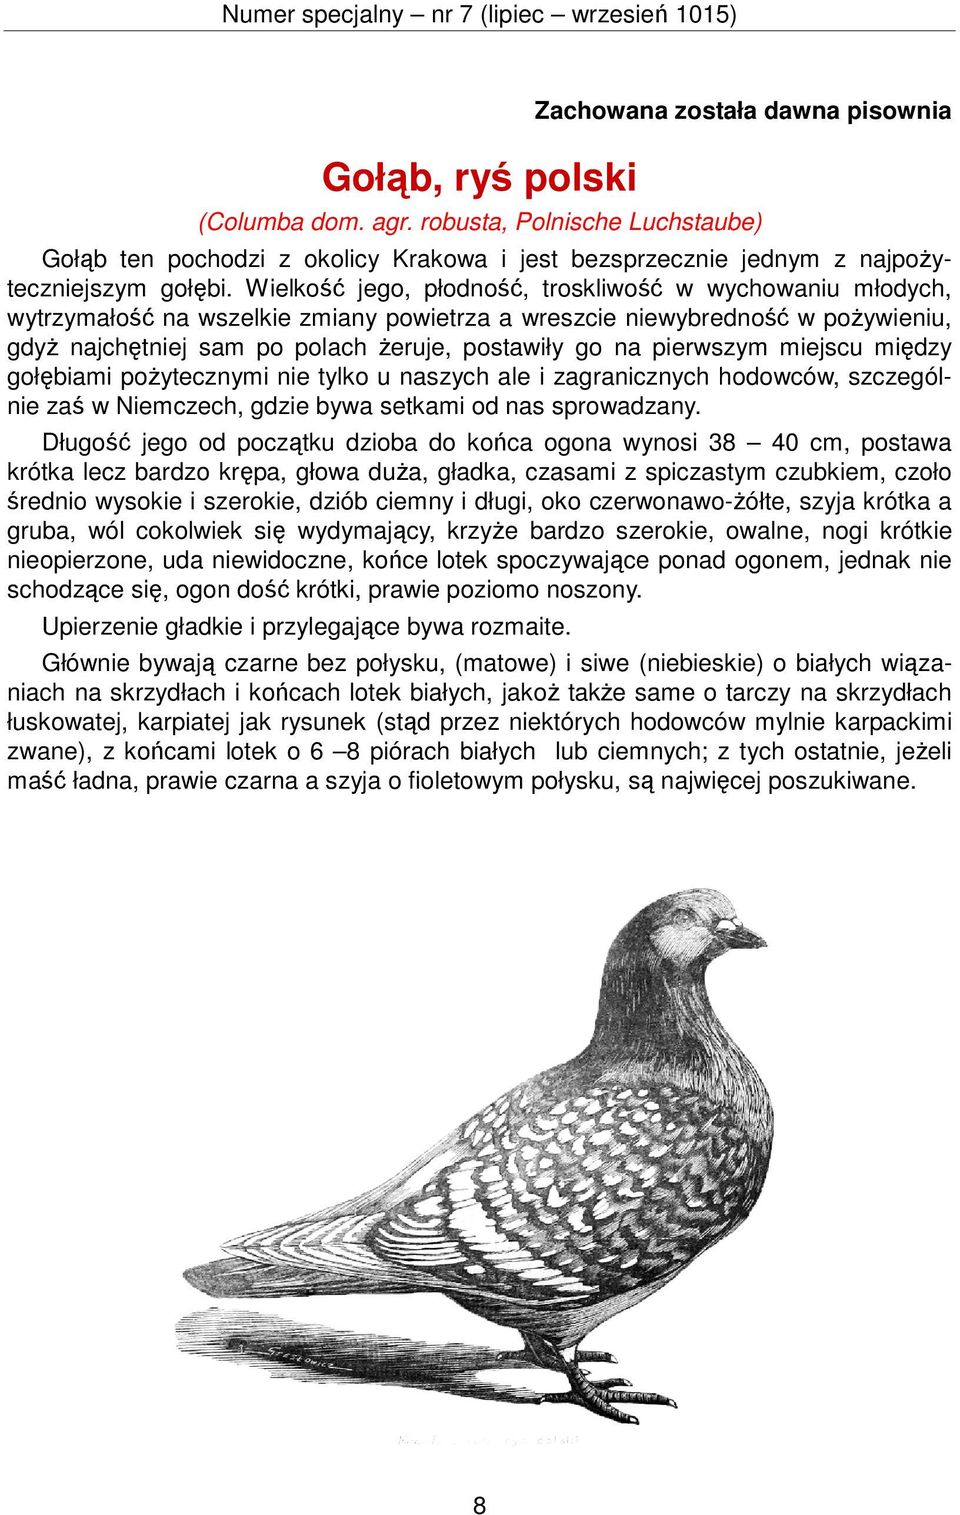 Rasowe gołębie, drób, króliki i inne zwierzęta - PDF Darmowe pobieranie